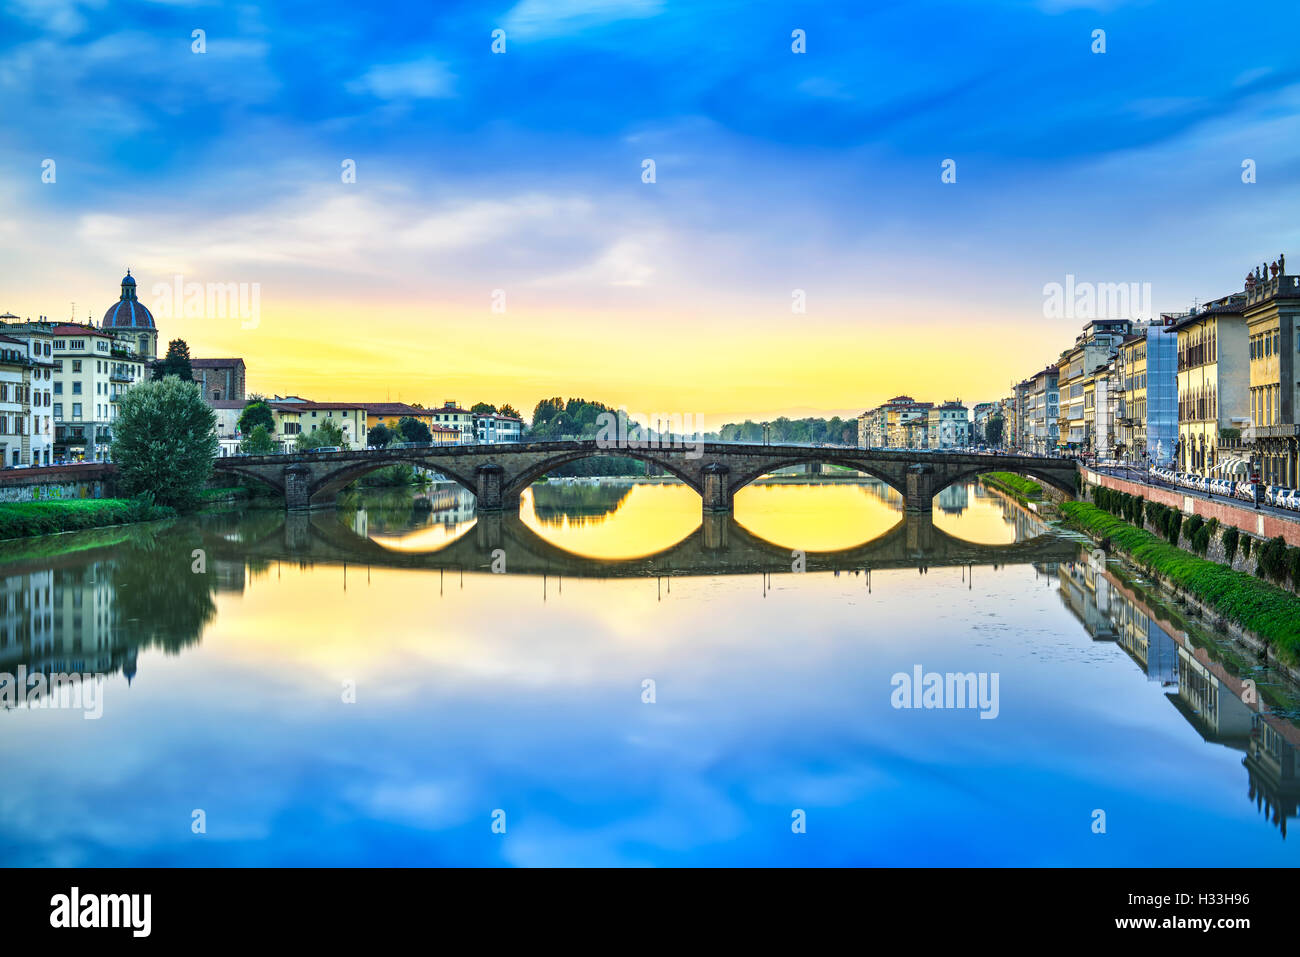 Florenz, Ponte Alla Carraia mittelalterliche Brücke Wahrzeichen am Fluss Arno, Sonnenuntergang Landschaft mit Reflexion. Es ist das zweite älteste b Stockfoto